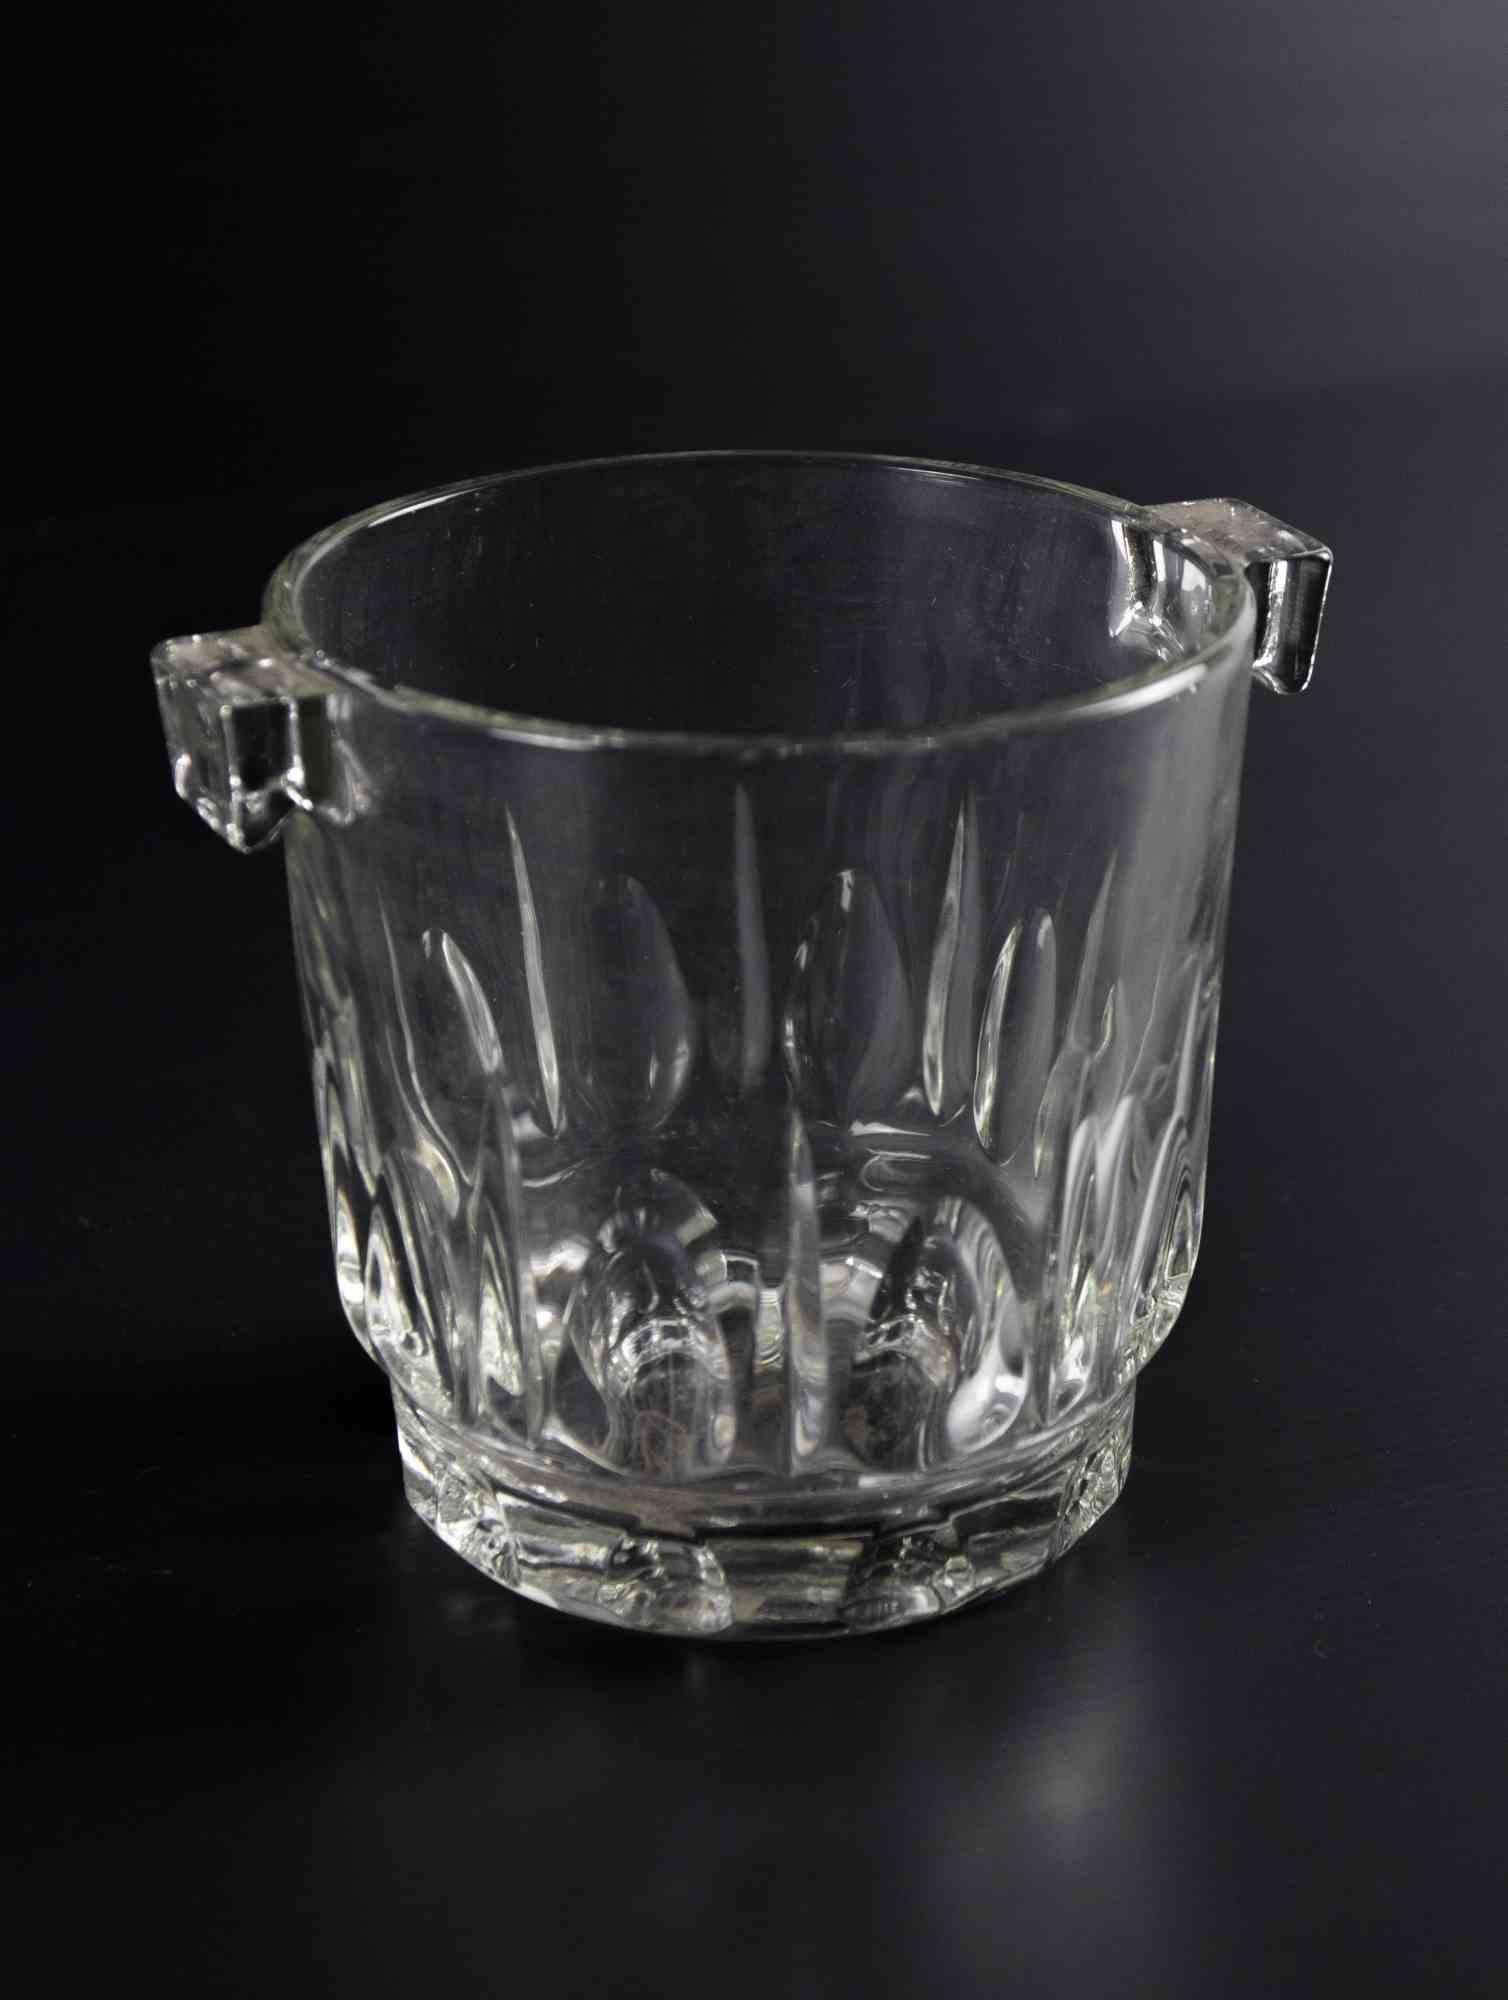 Le seau à glace en verre est un objet décoratif original réalisé dans les années 1970.

Verre d'art original. 

Fabriquées en Italie.

Dimensions : 12 x 15 cm. 

Bonnes conditions.